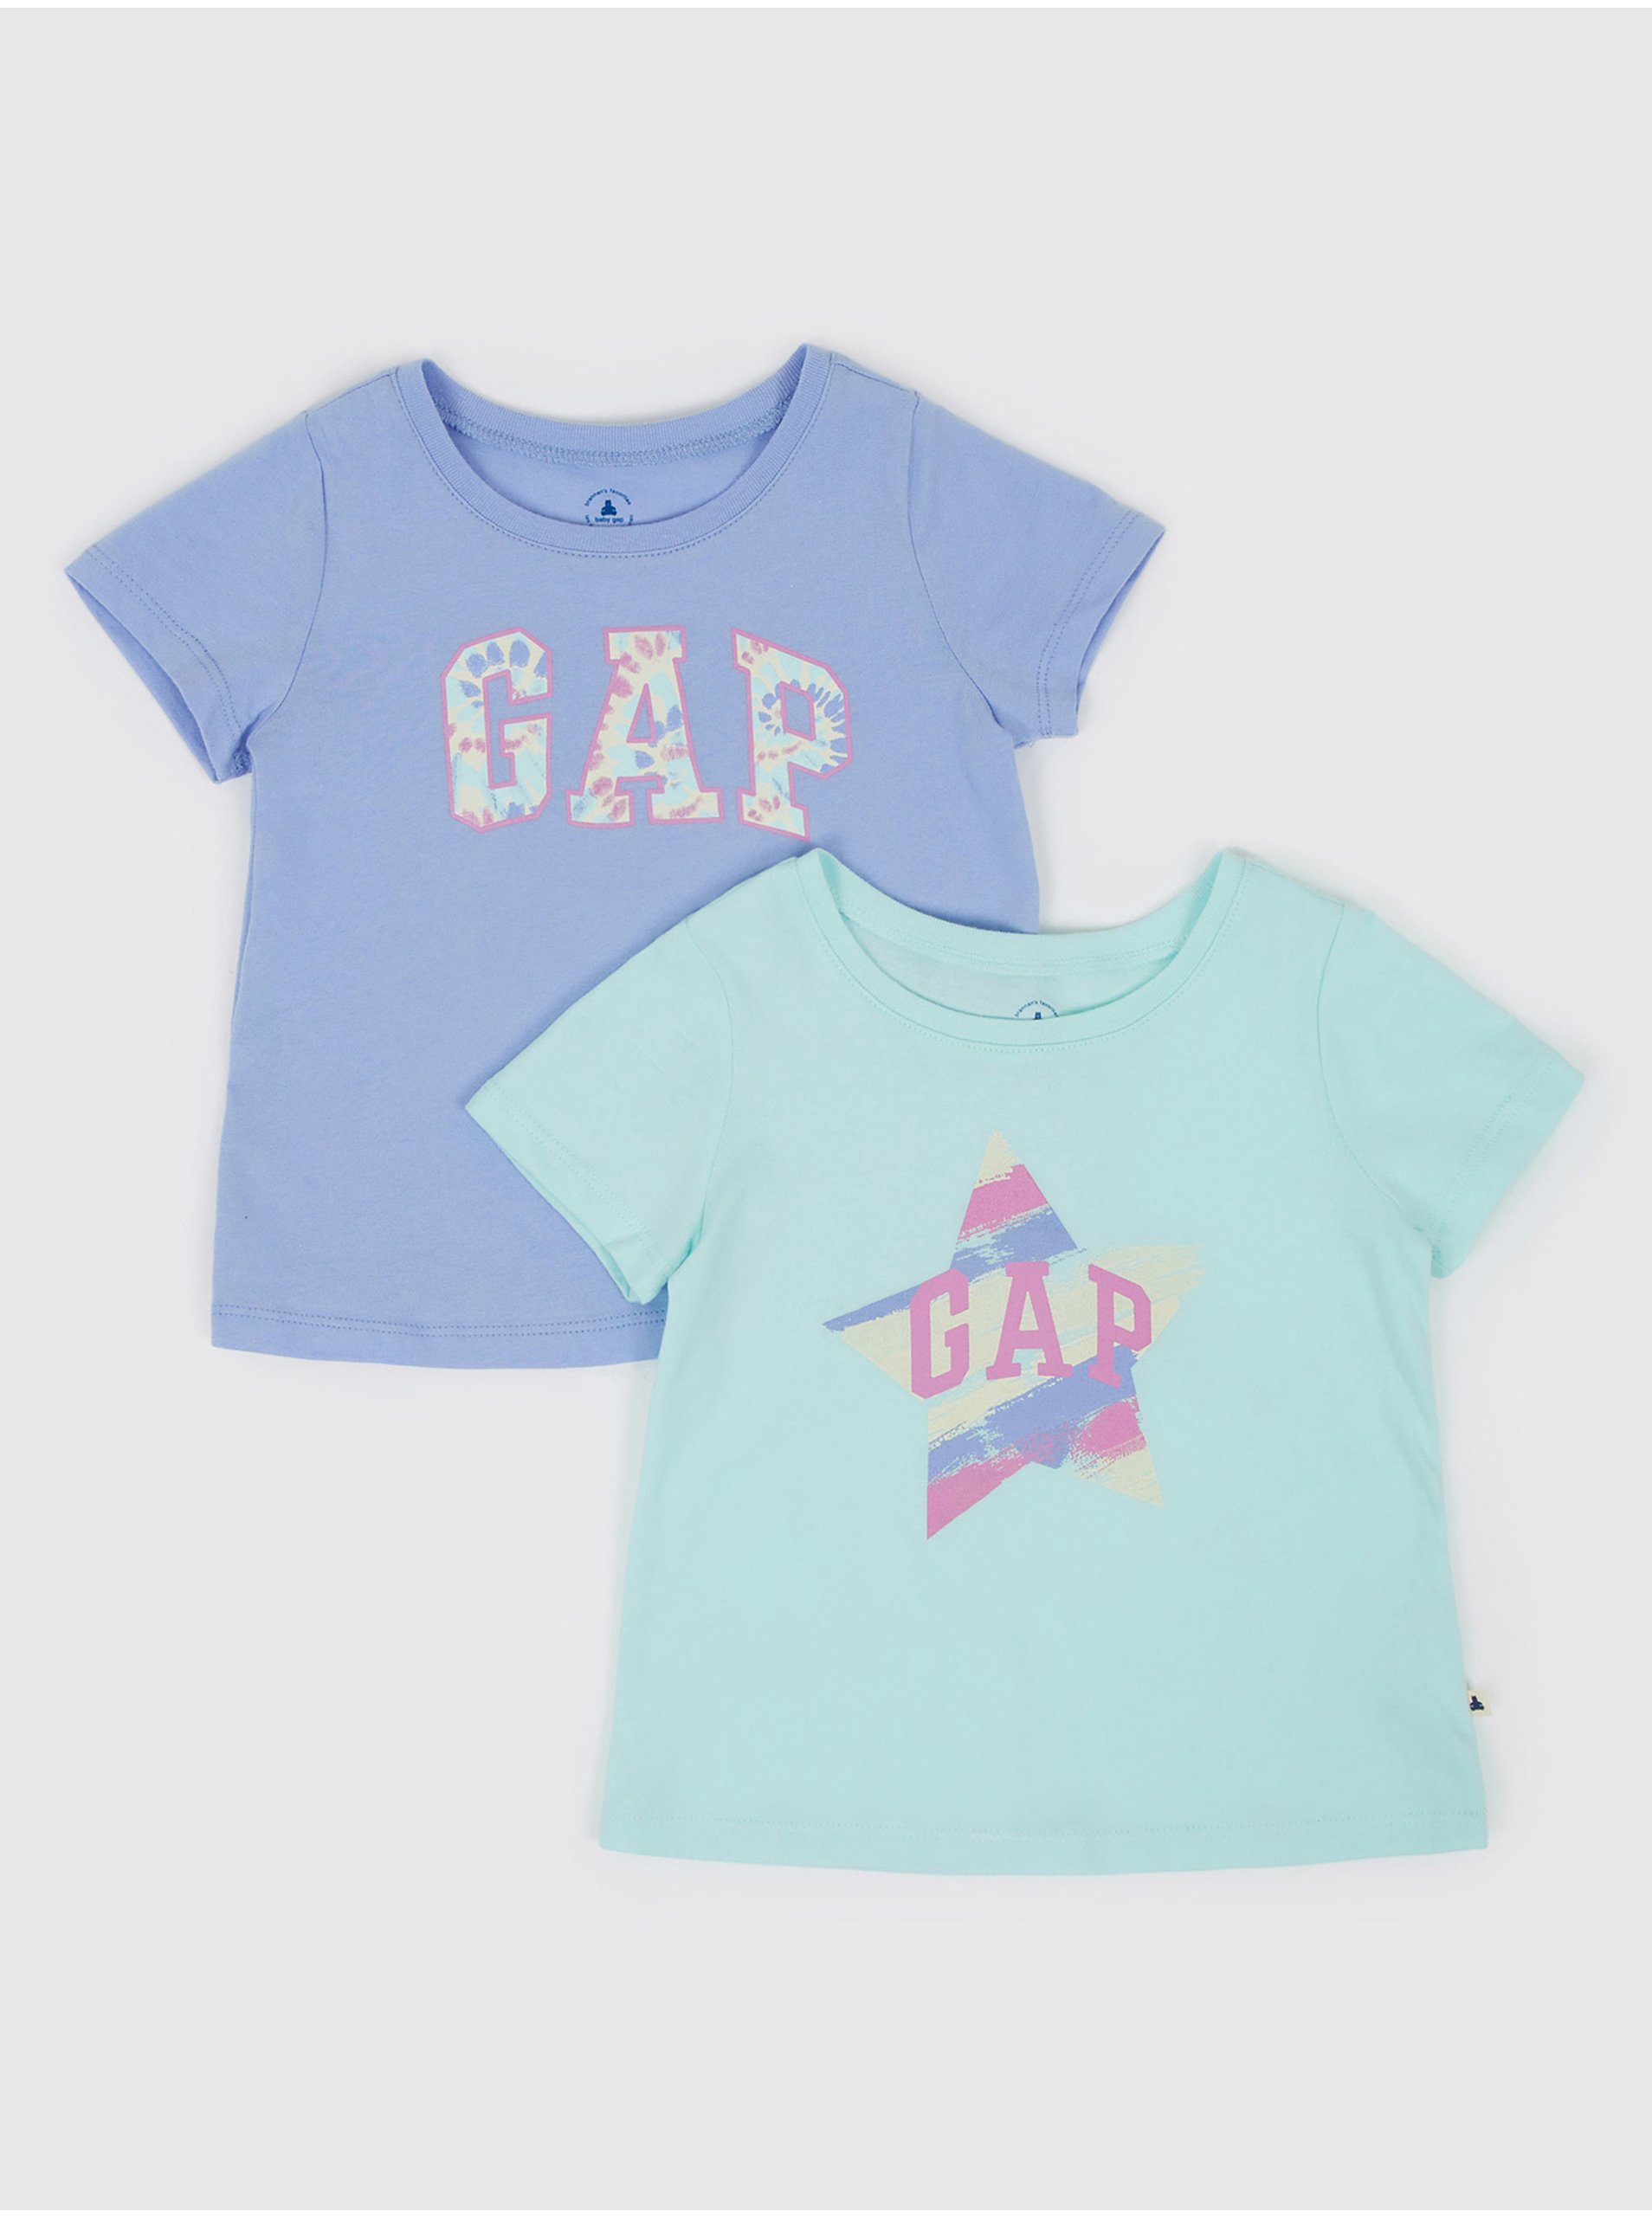 Lacno Farebné dievčenské tričká logo GAP, 2ks